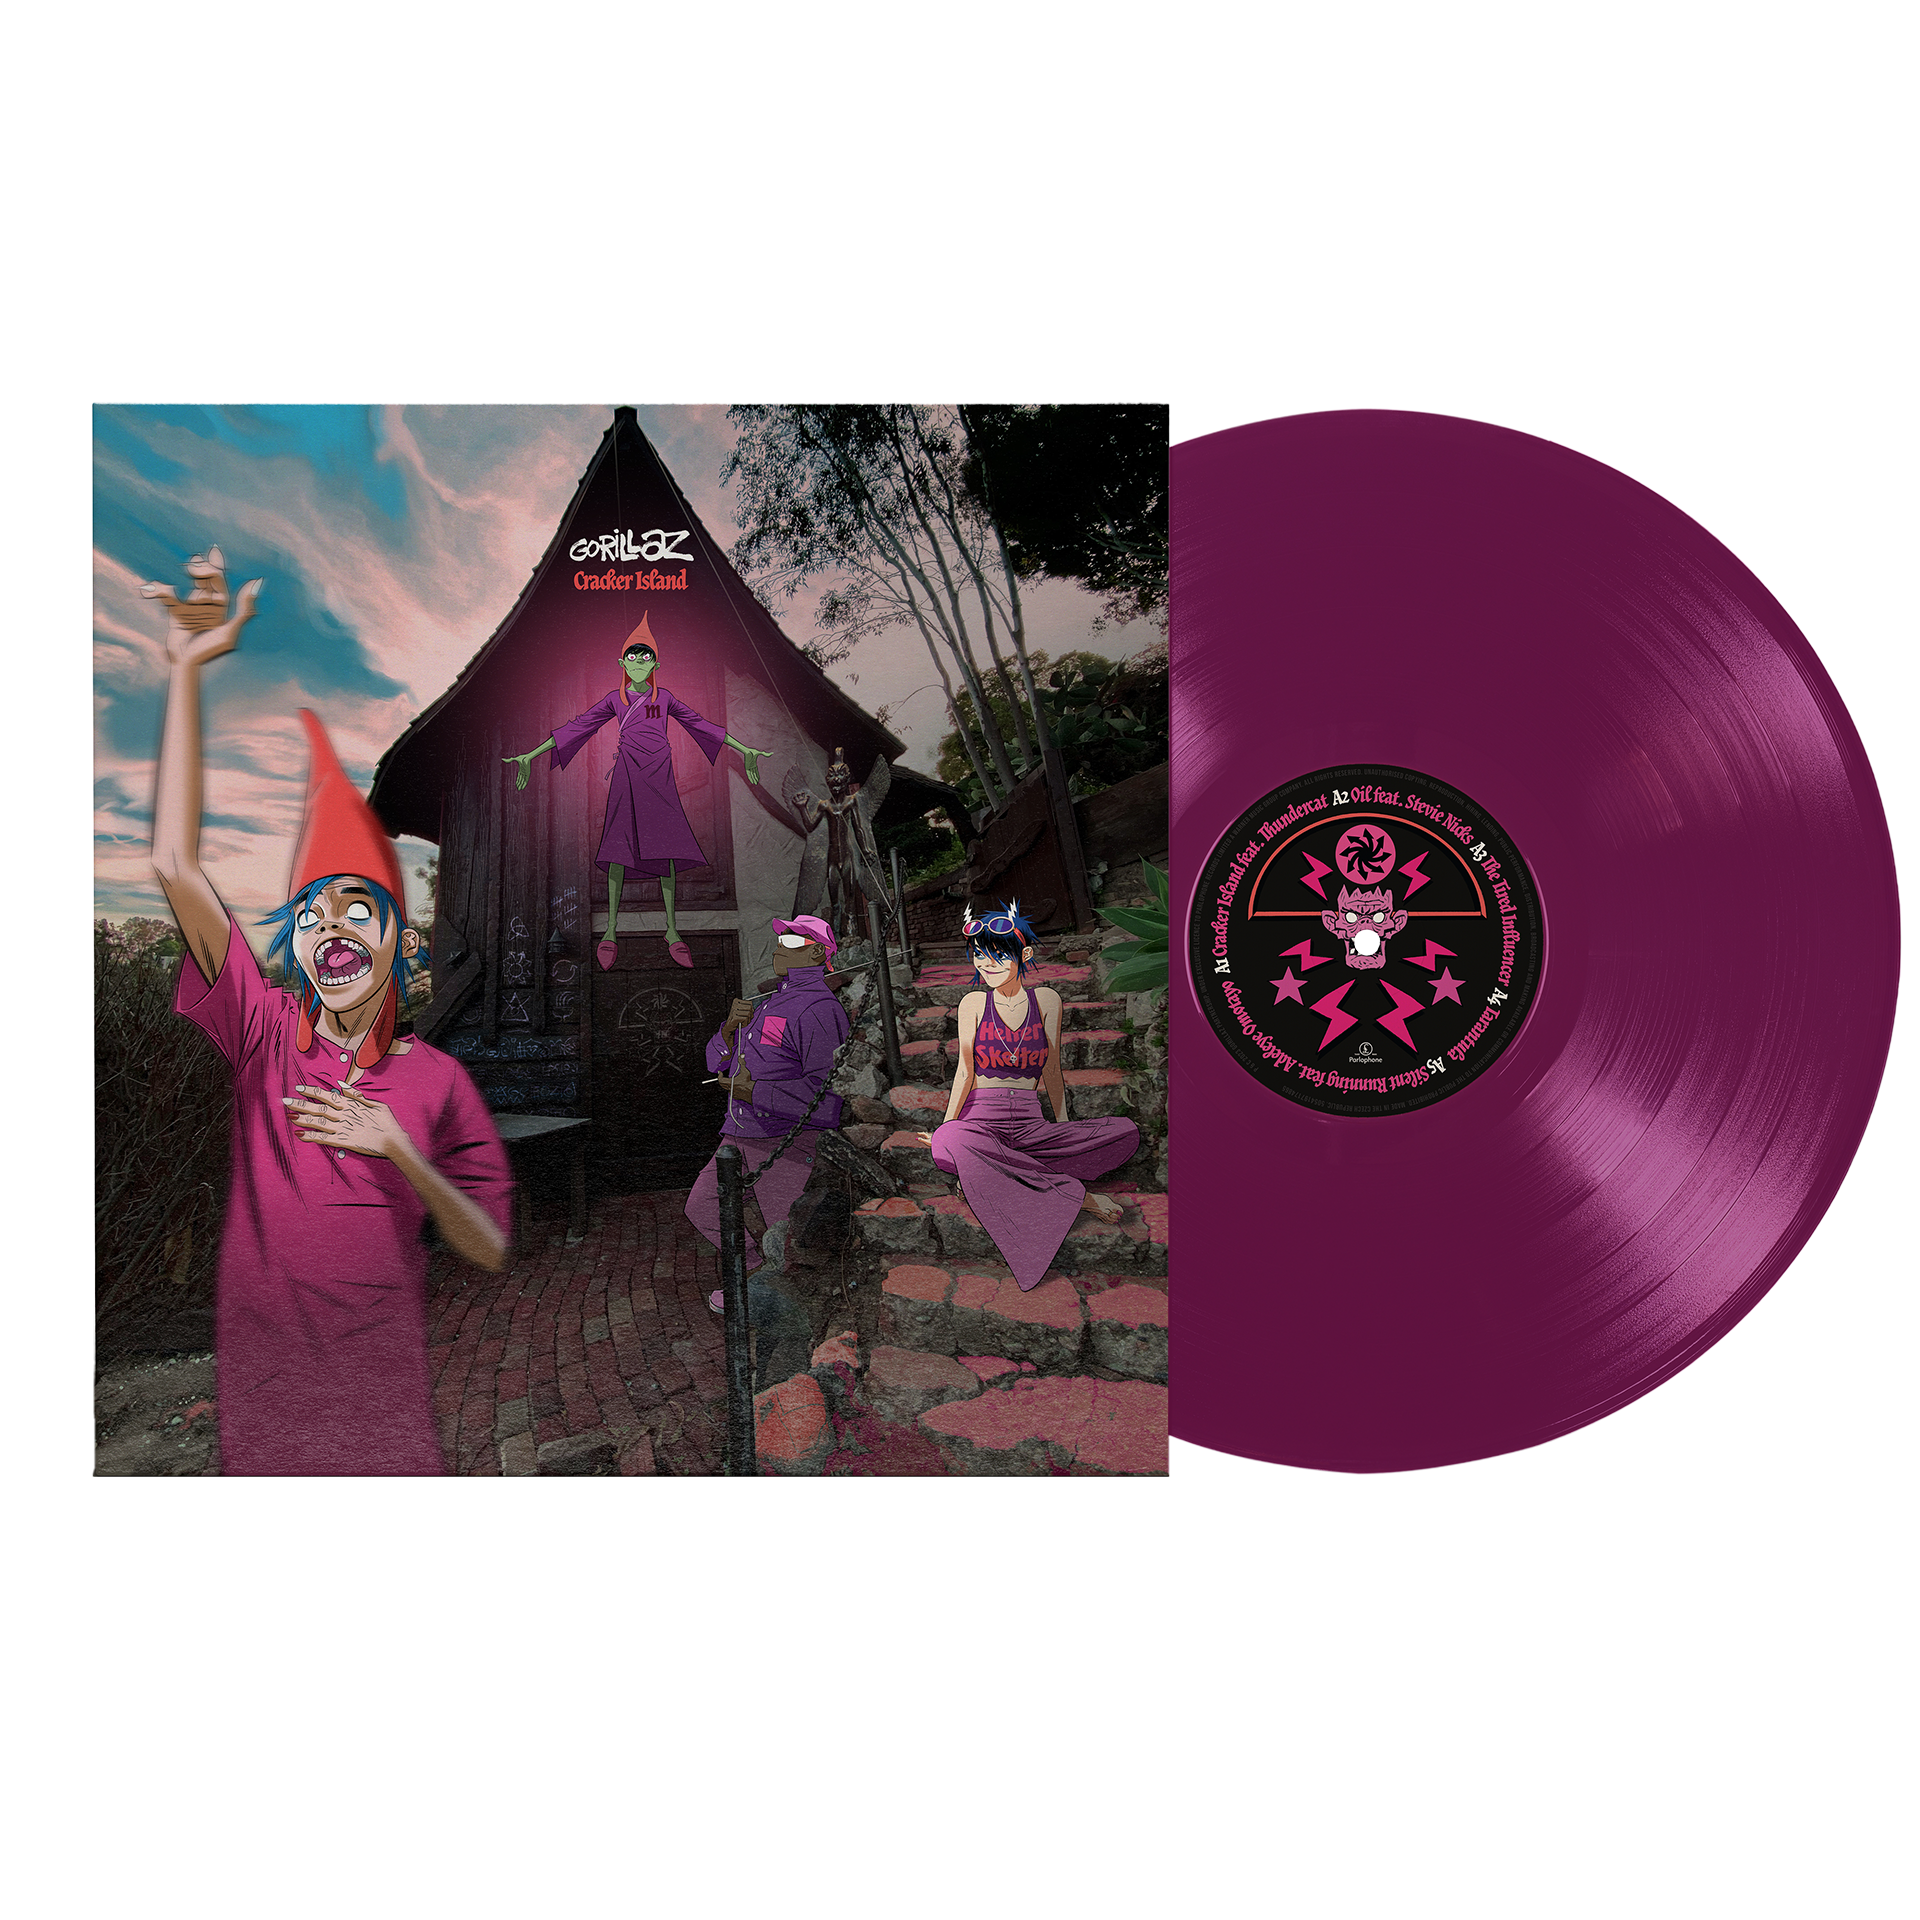 【ストア限定盤】クラッカー ・アイランド [Exclusive Transparent Purple Vinyl]